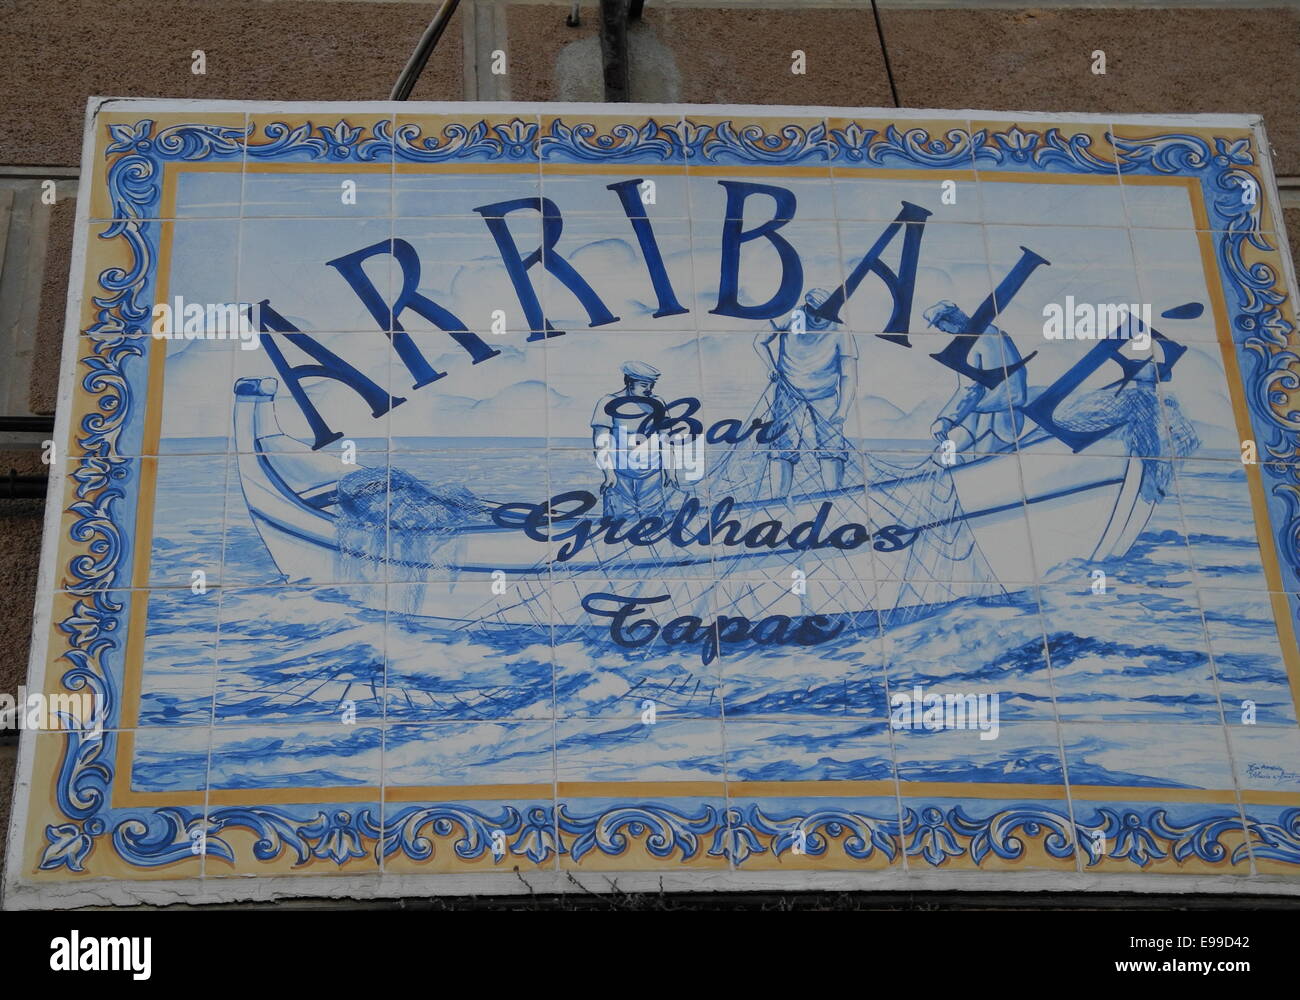 Una piastrella Restaurant Sign in Aveiro, Portogallo In Portogallo, molti segni sono realizzati utilizzando i famosi azulejos portoghesi (piastrelle). Foto Stock